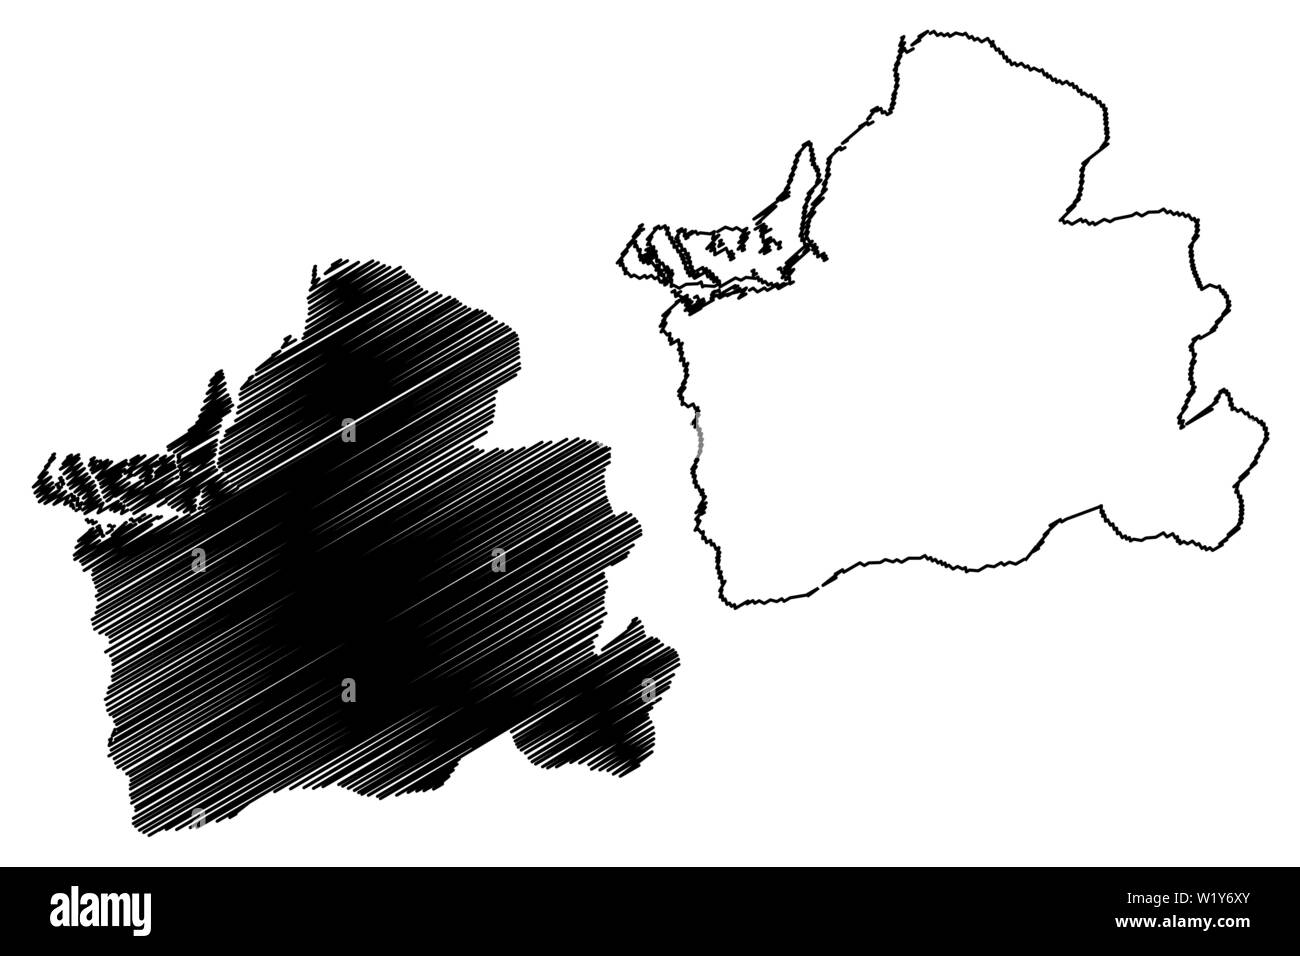 La provincia de El Oro (República de Ecuador, Provincias de Ecuador) Mapa ilustración vectorial, dibujo a mano alzada El Oro mapa Ilustración del Vector